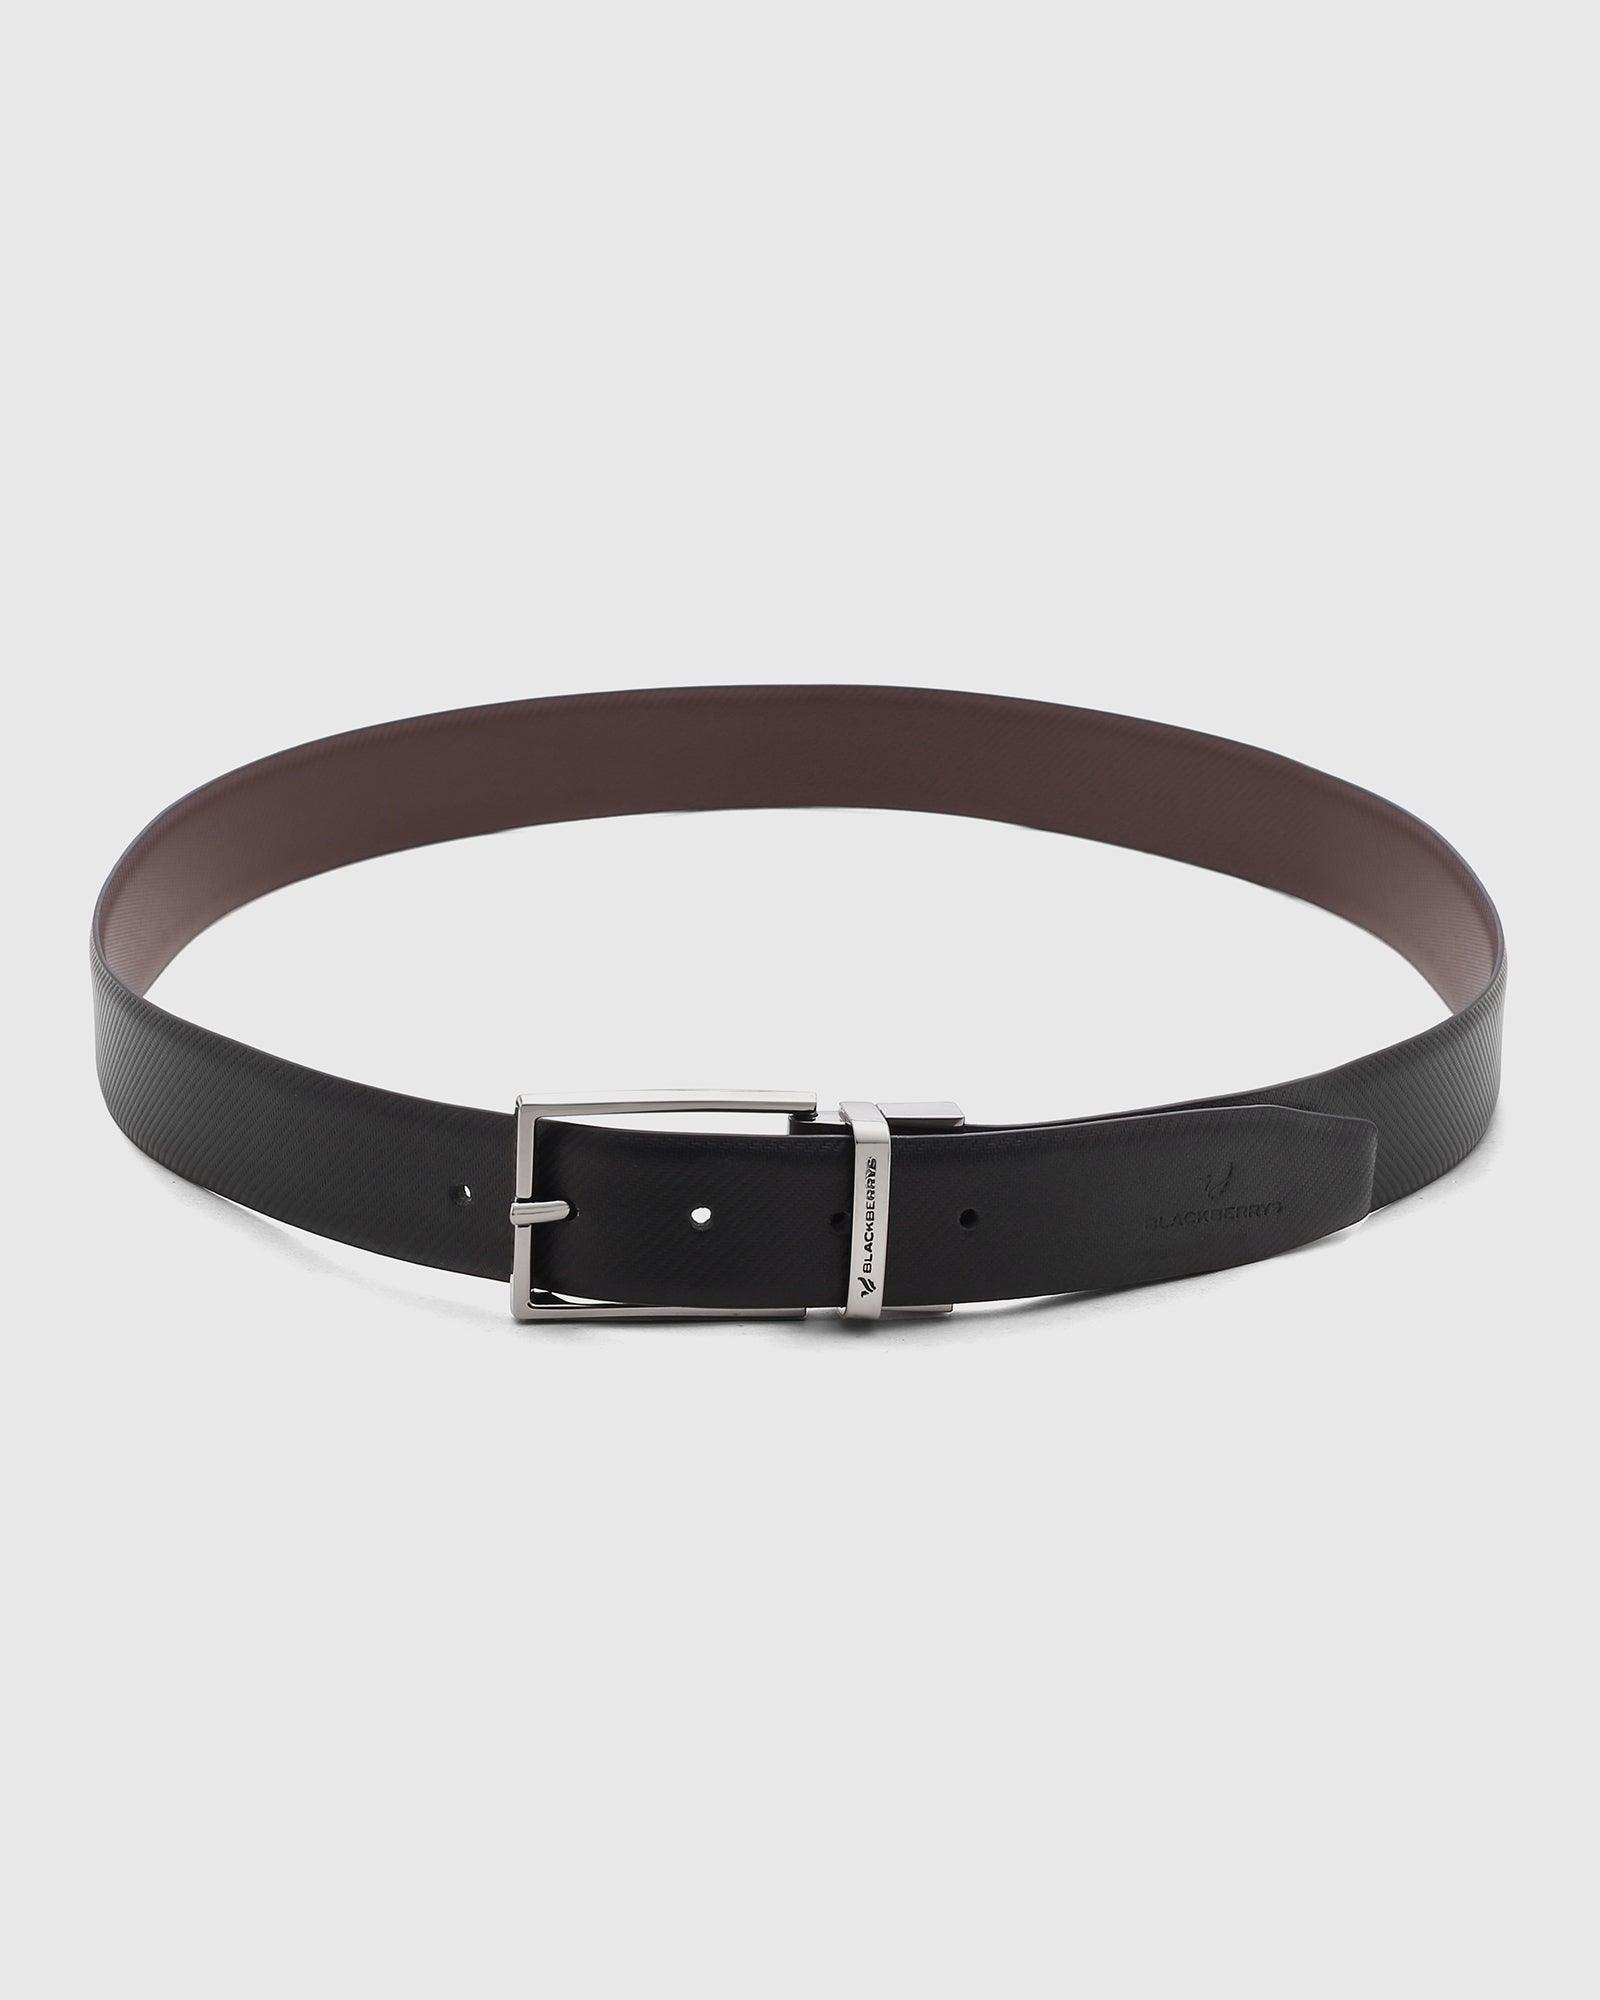 Leather Reversible Black Brown Textured Belt - Sakuri